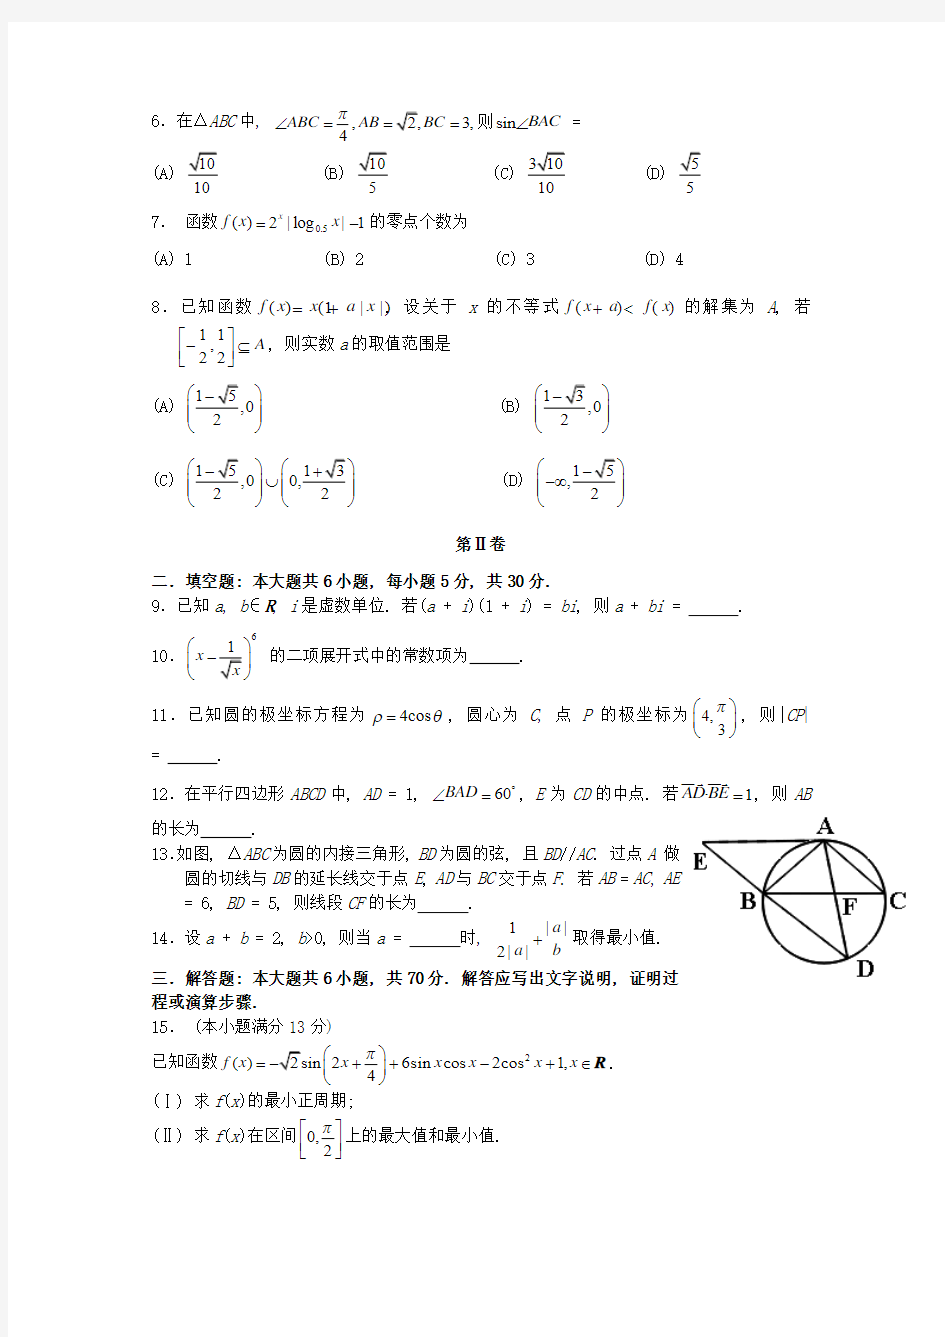 2013年高考理科数学(天津卷)